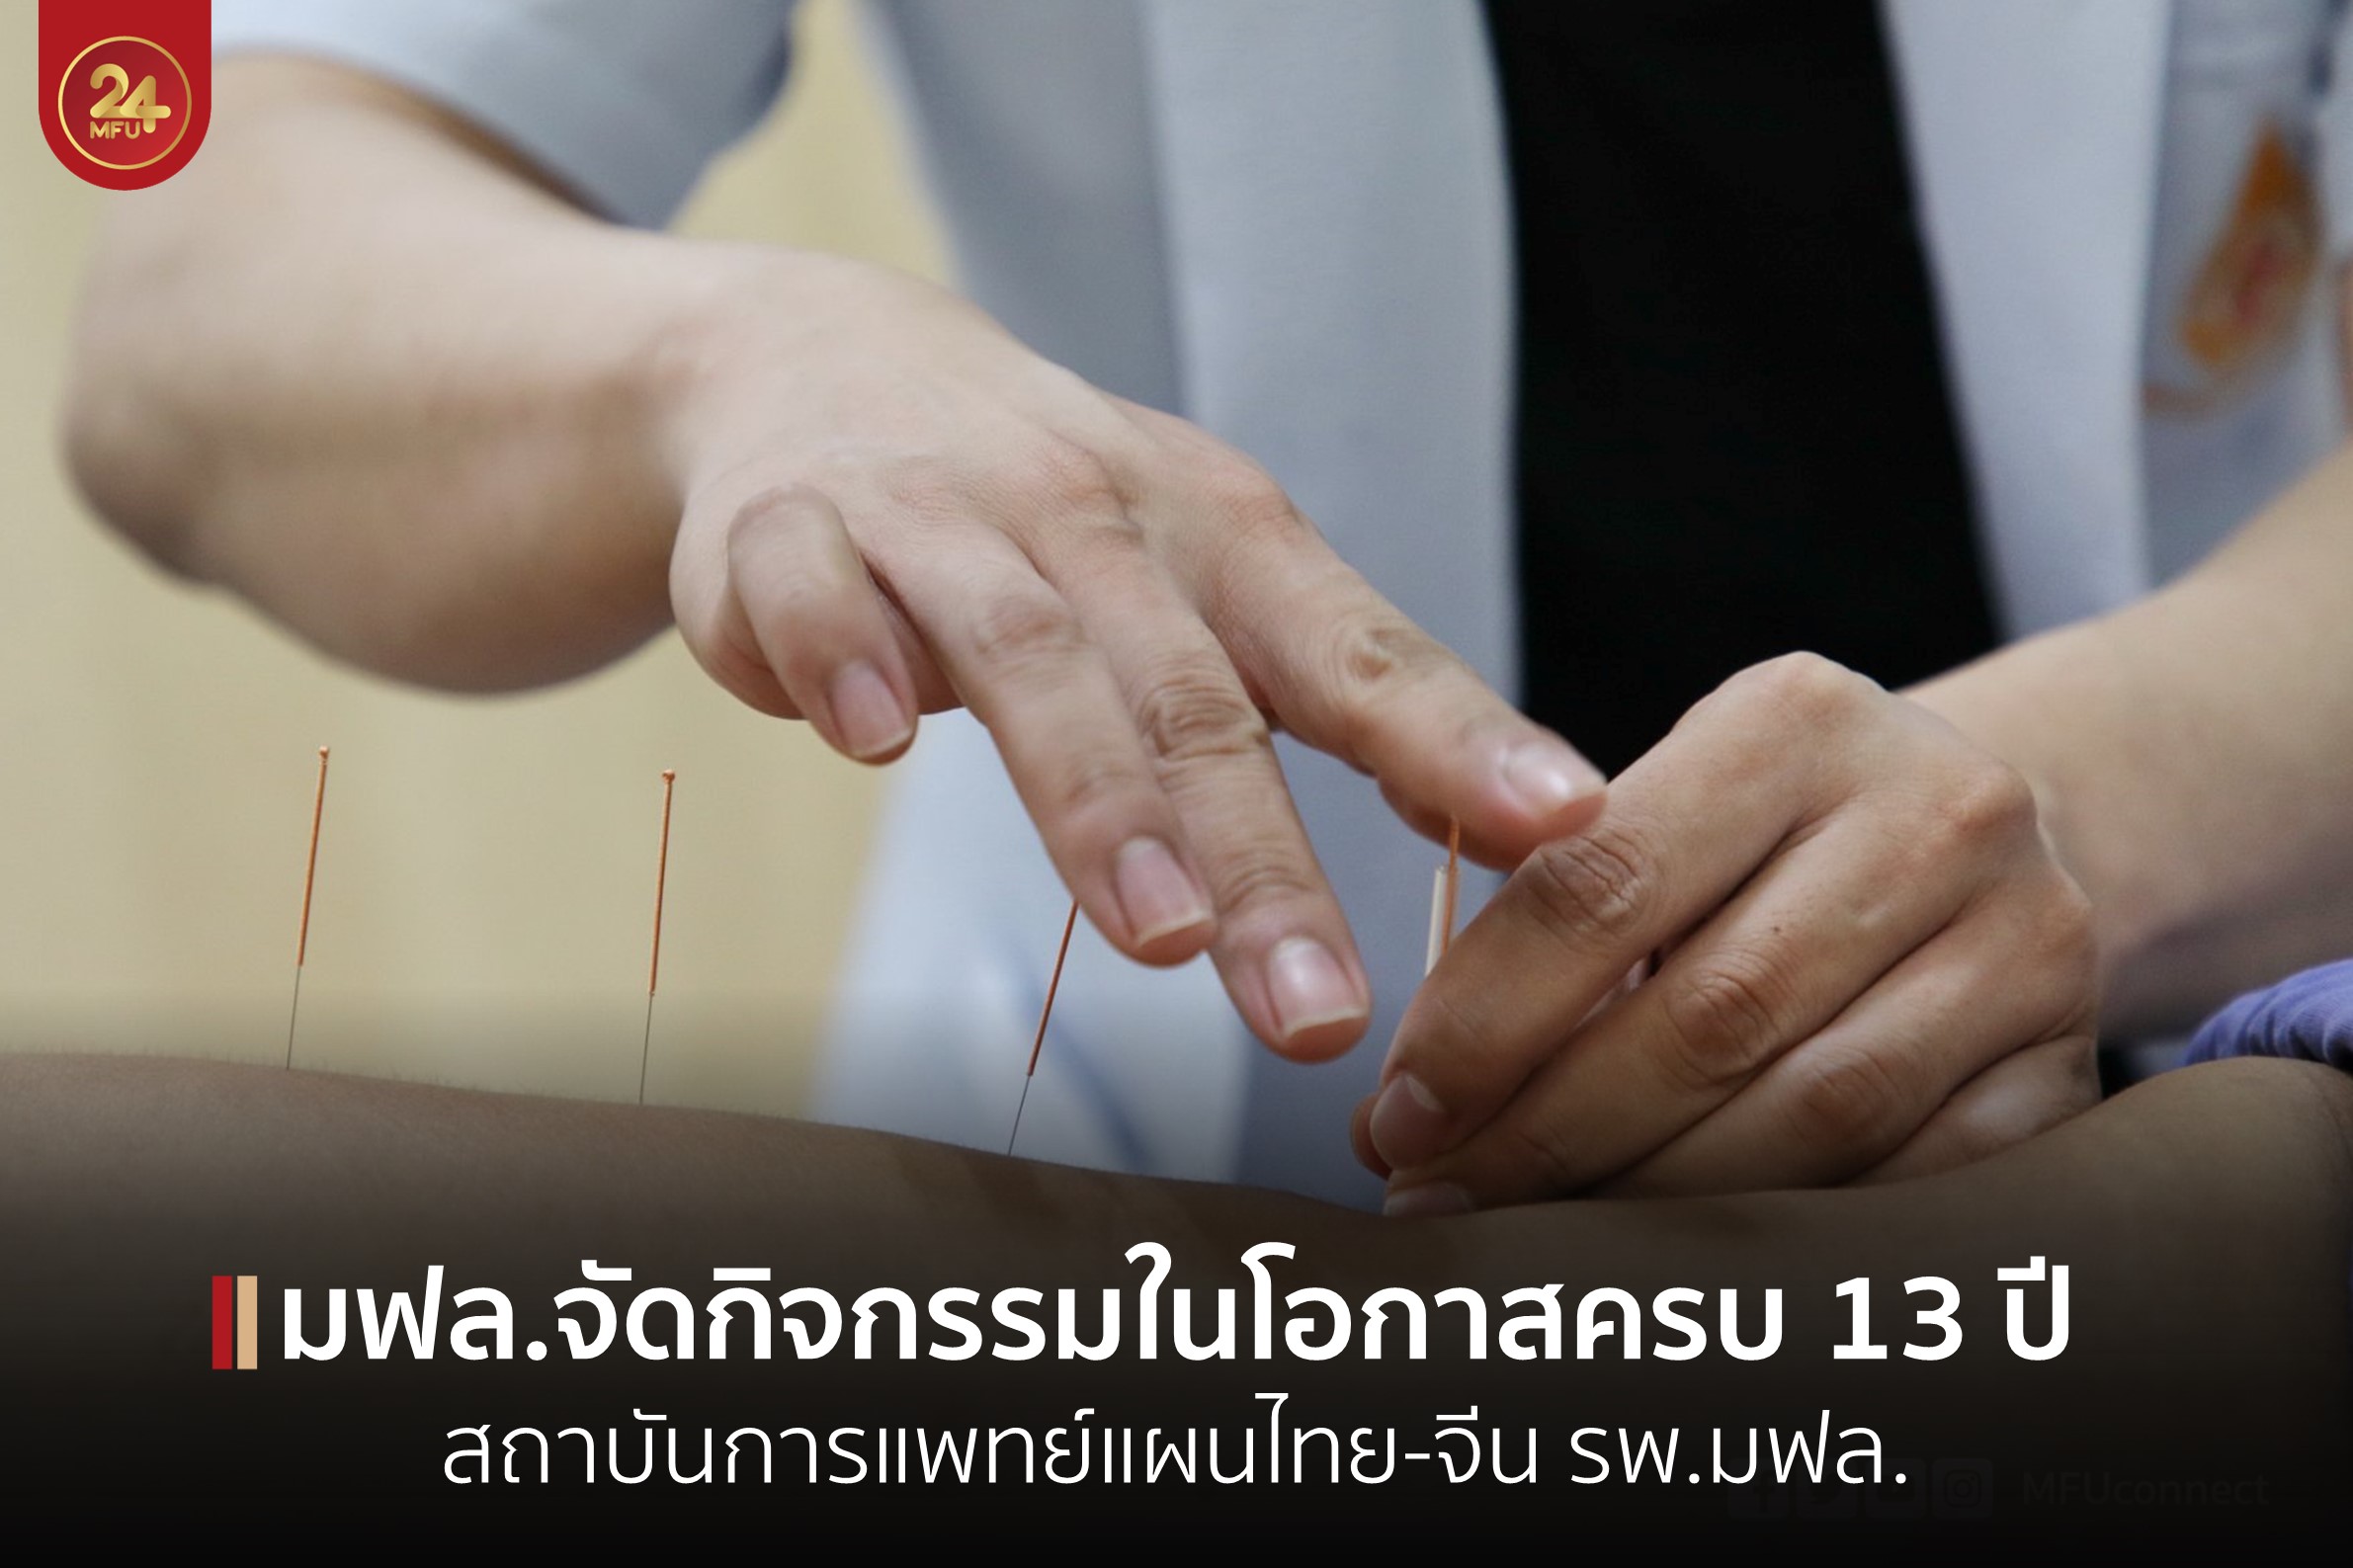 สถาบันการแพทย์แผนไทย-จีน โรงพยาบาลมหาวิทยาลัยแม่ฟ้าหลวง จัดกิจกรรมในโอกาสให้บริการครบรอบ 13 ปี 